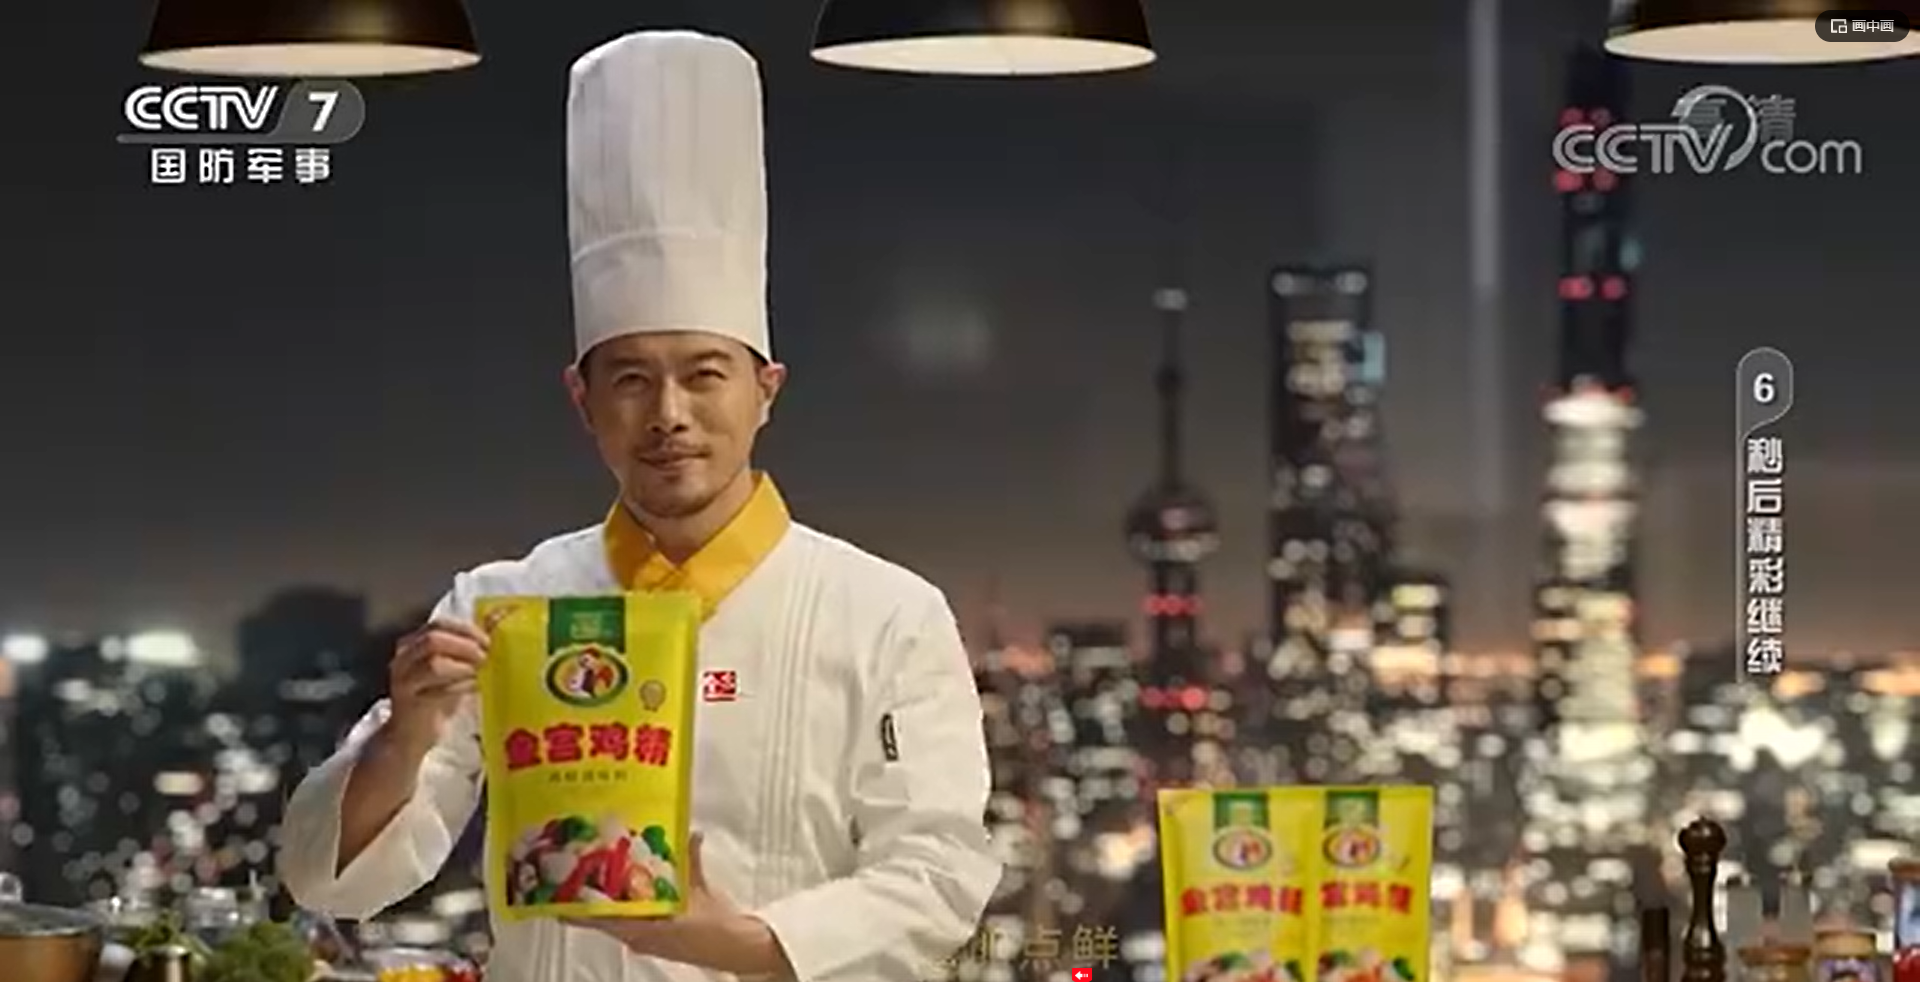 相信品牌的力量｜金宫川派味业成为央视展播品牌